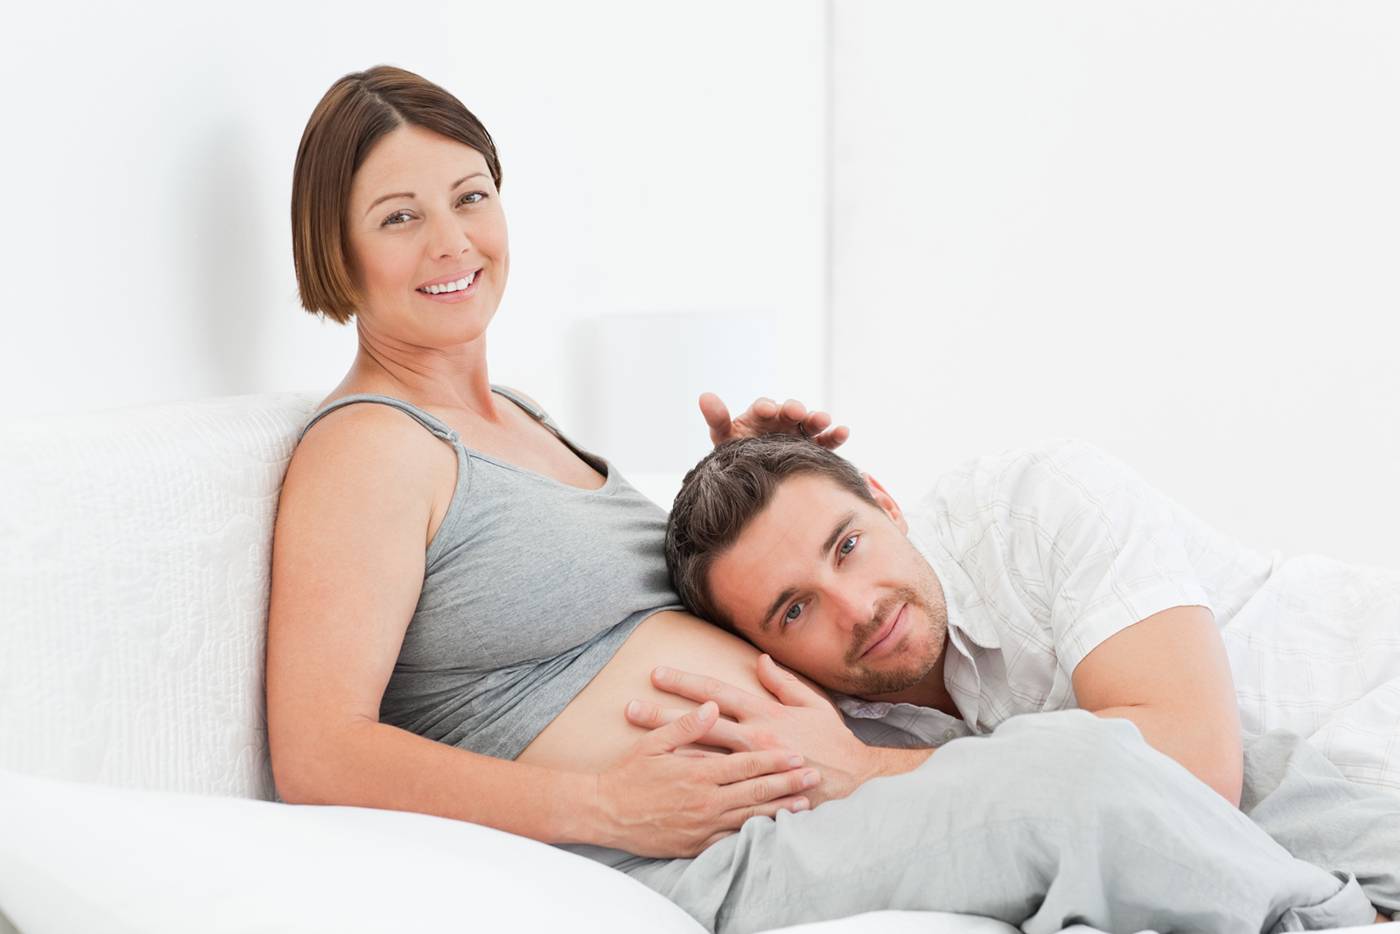 Нежеланная беременность. как смириться и полюбить своего малыша всем сердцем - беременность